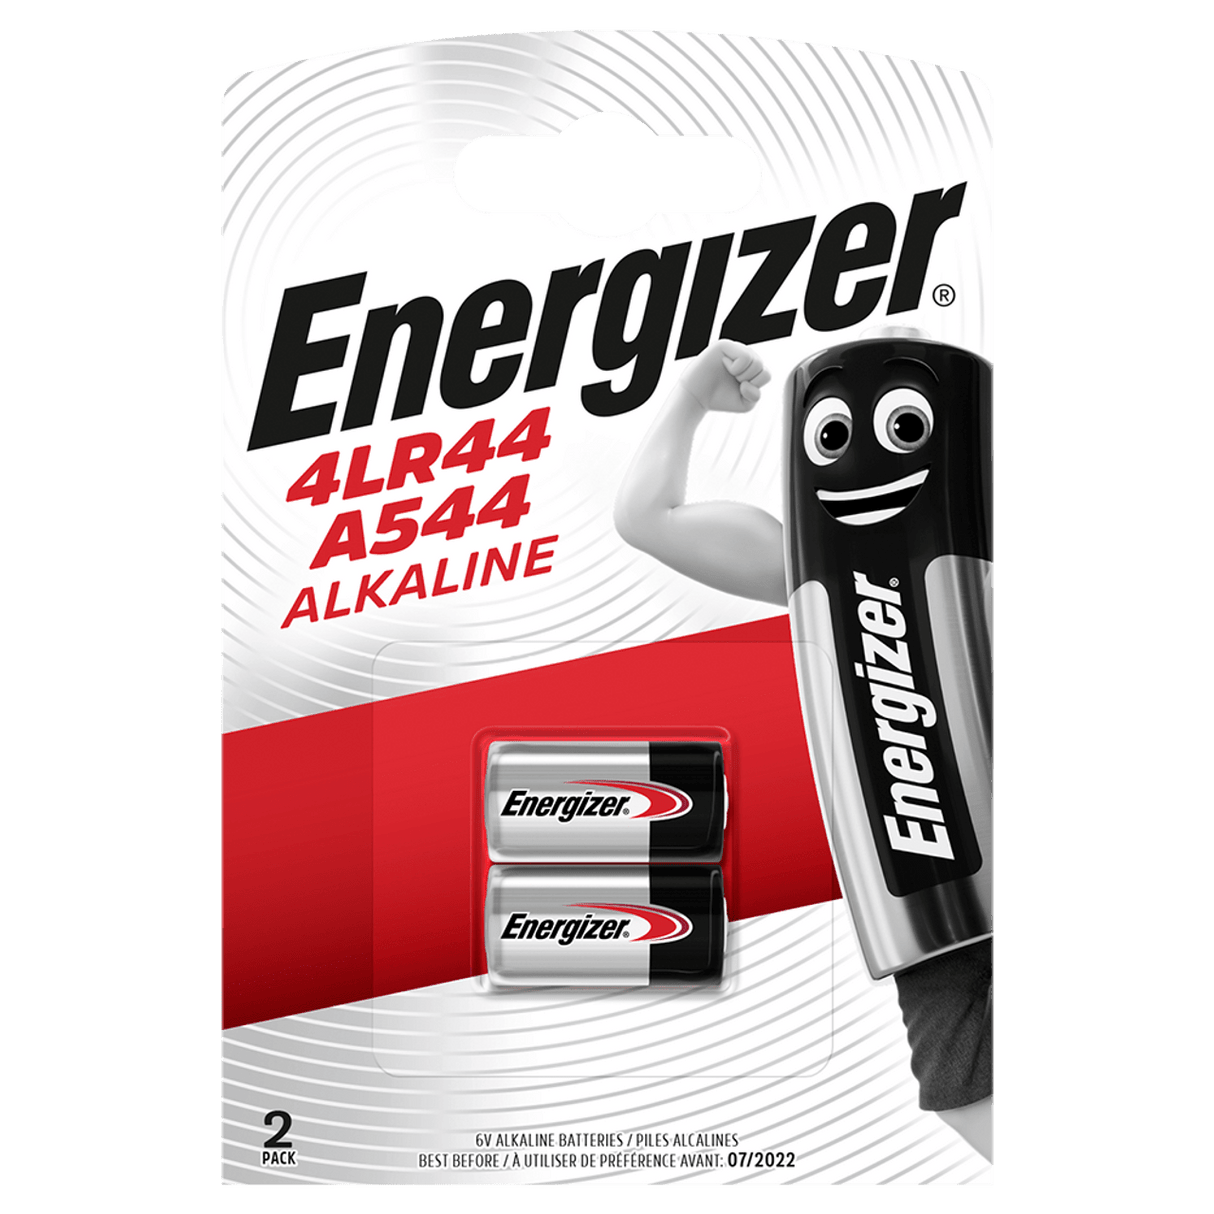 Energizer 4LR44 6V Alkaline Batteries A544 (2 Pack) - Batteries - Energizer